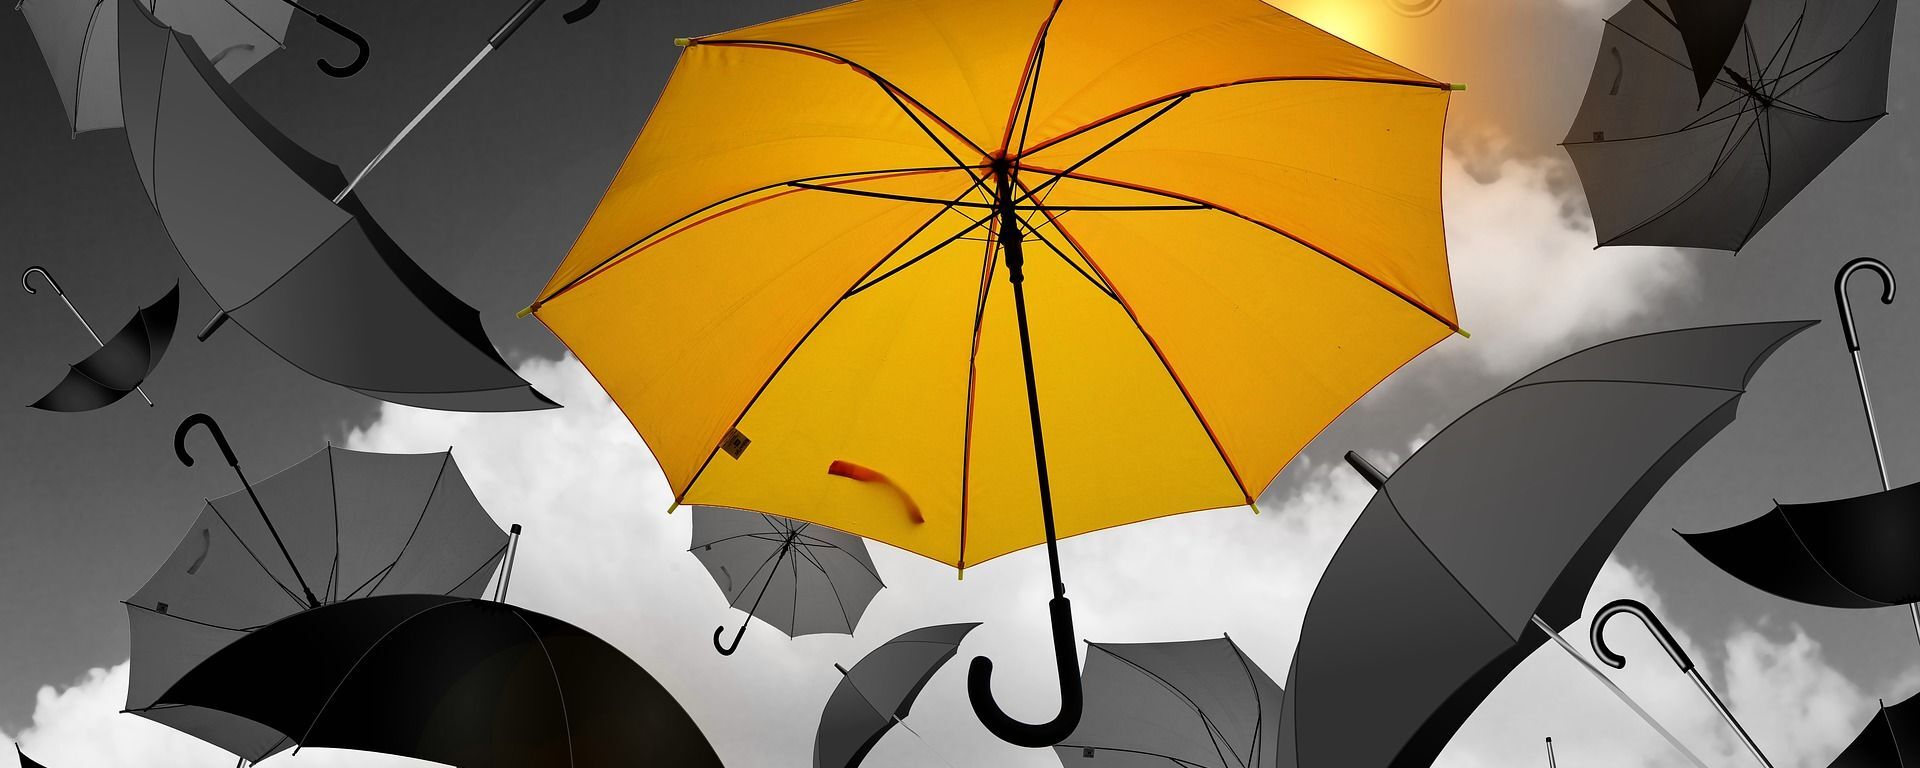 ყვითელი ქოლგა ნაცრისფერი ქოლგების ფონზე - Sputnik საქართველო, 1920, 01.08.2020